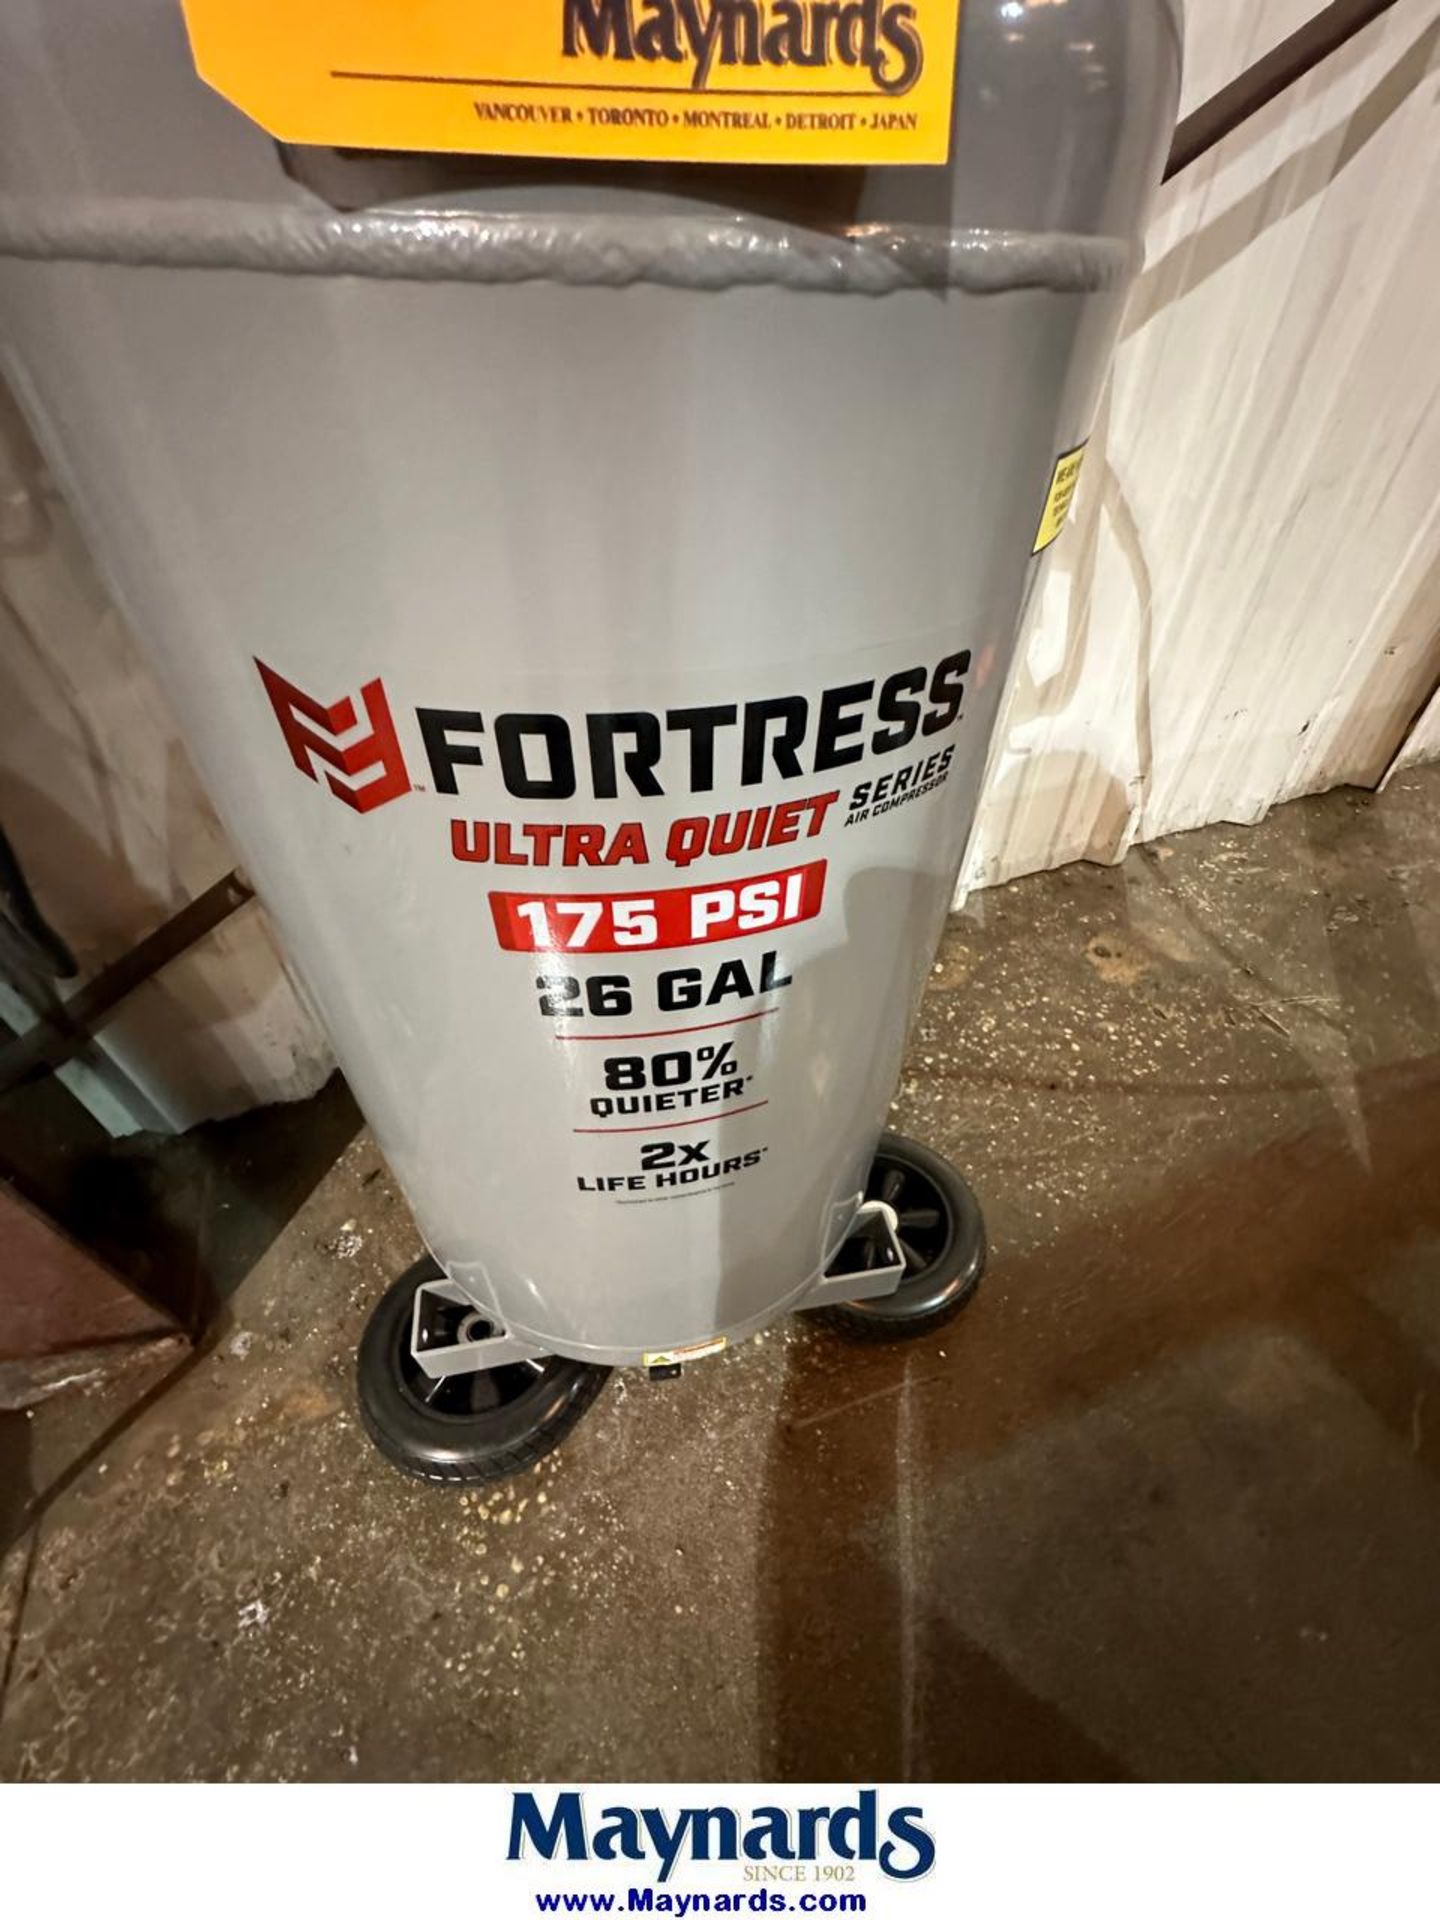 Fortress 26 Gallon Compressor - Image 2 of 4